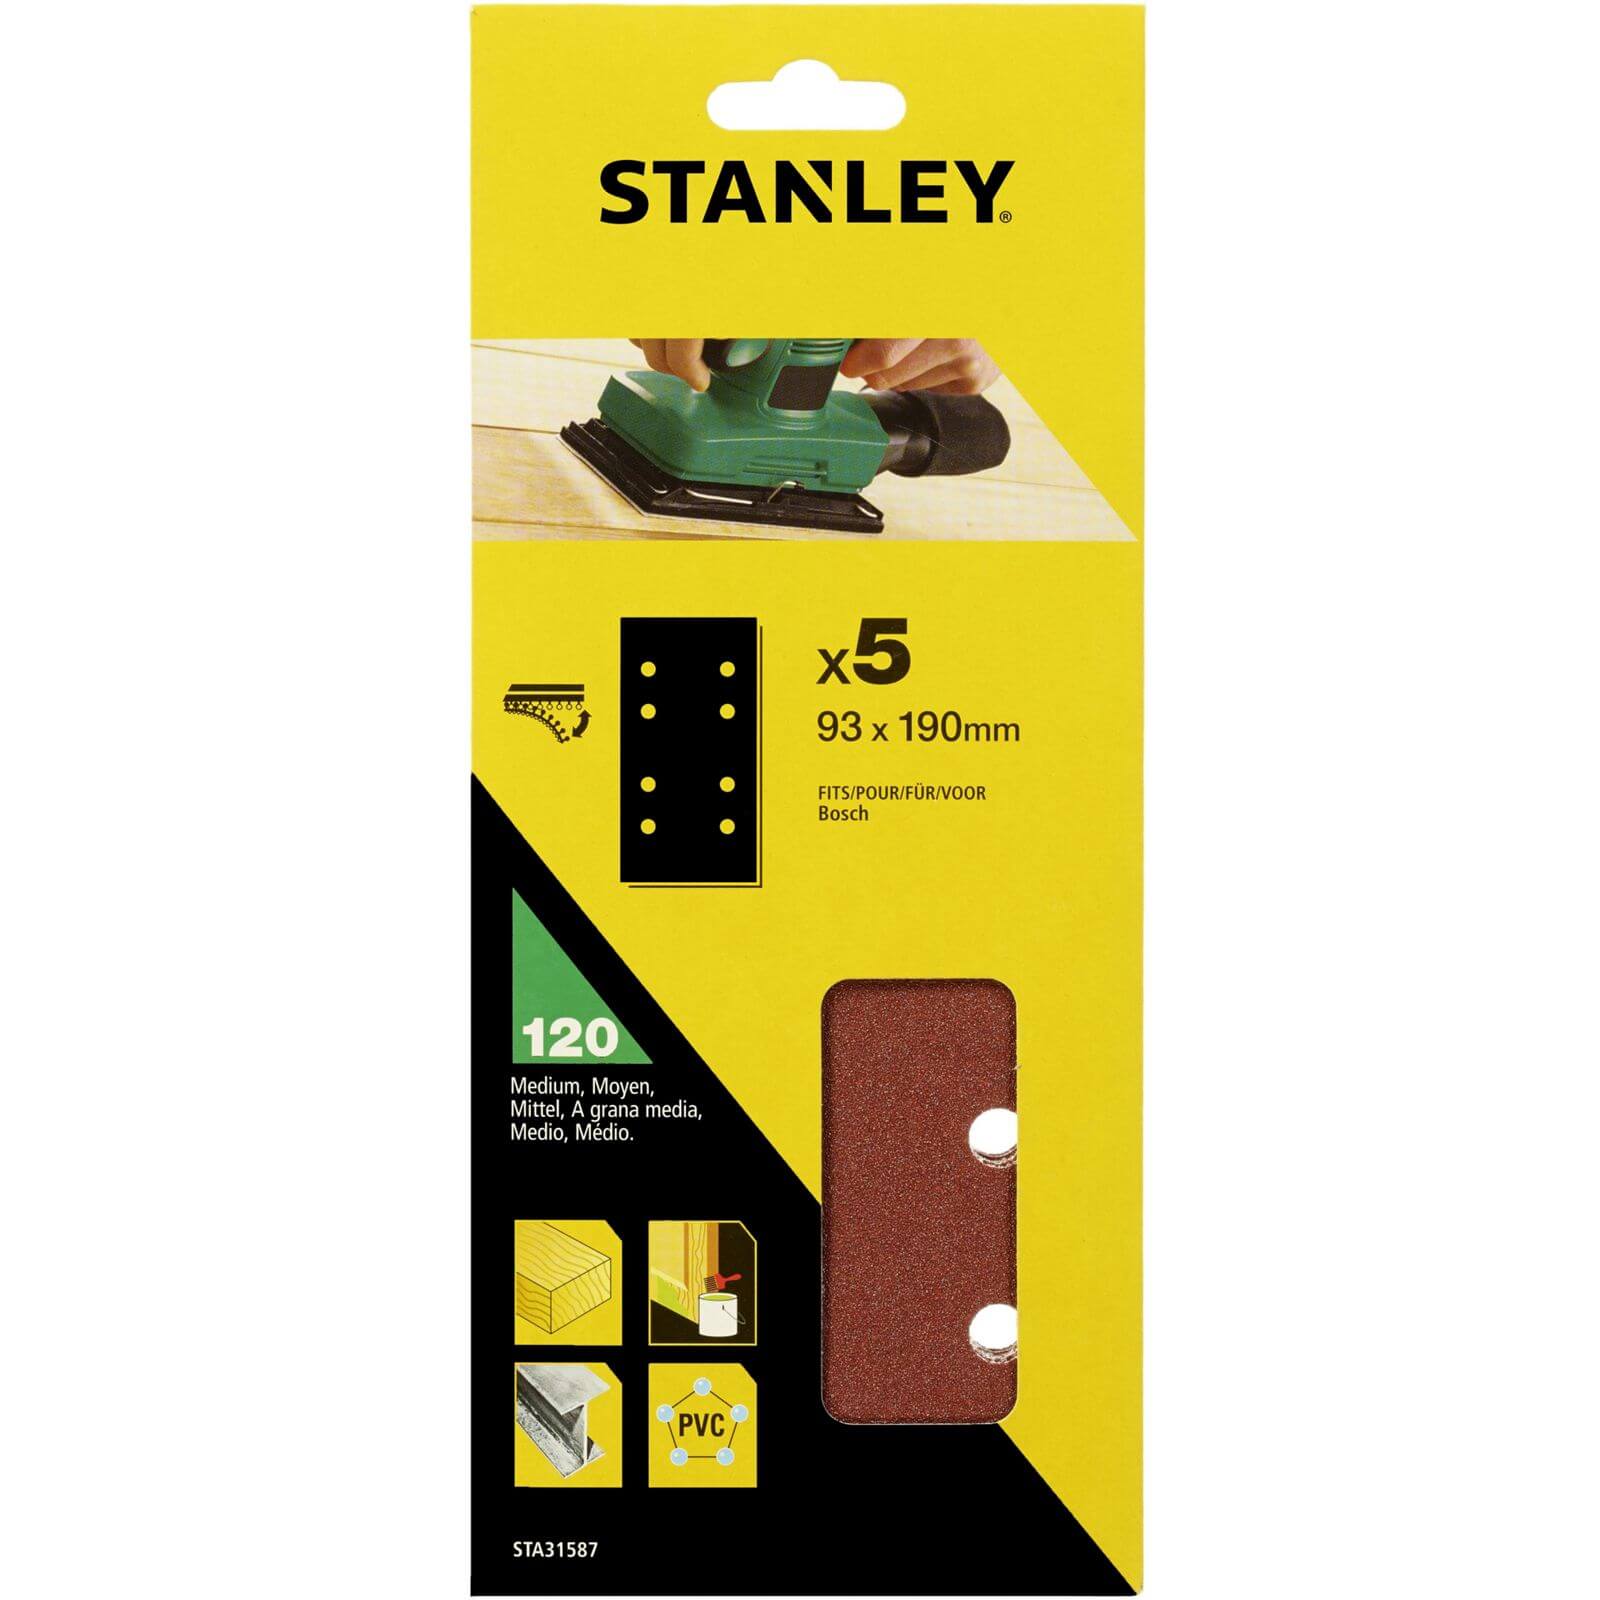 Stanley 1/3 Sheet Sander 120G Hook & Loop Sanding Sheets - STA31587-XJ